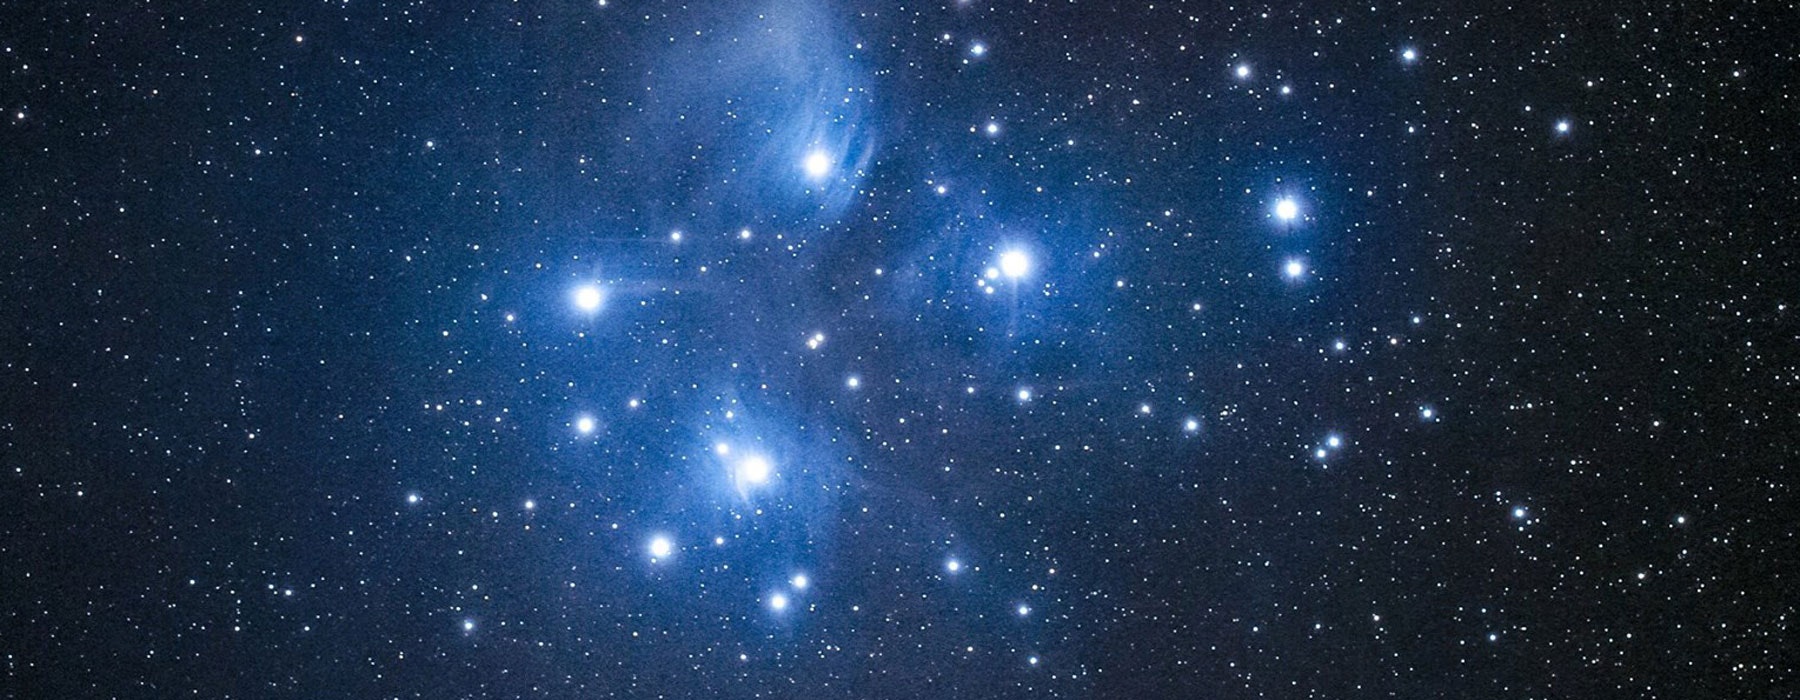 Matariki star cluster